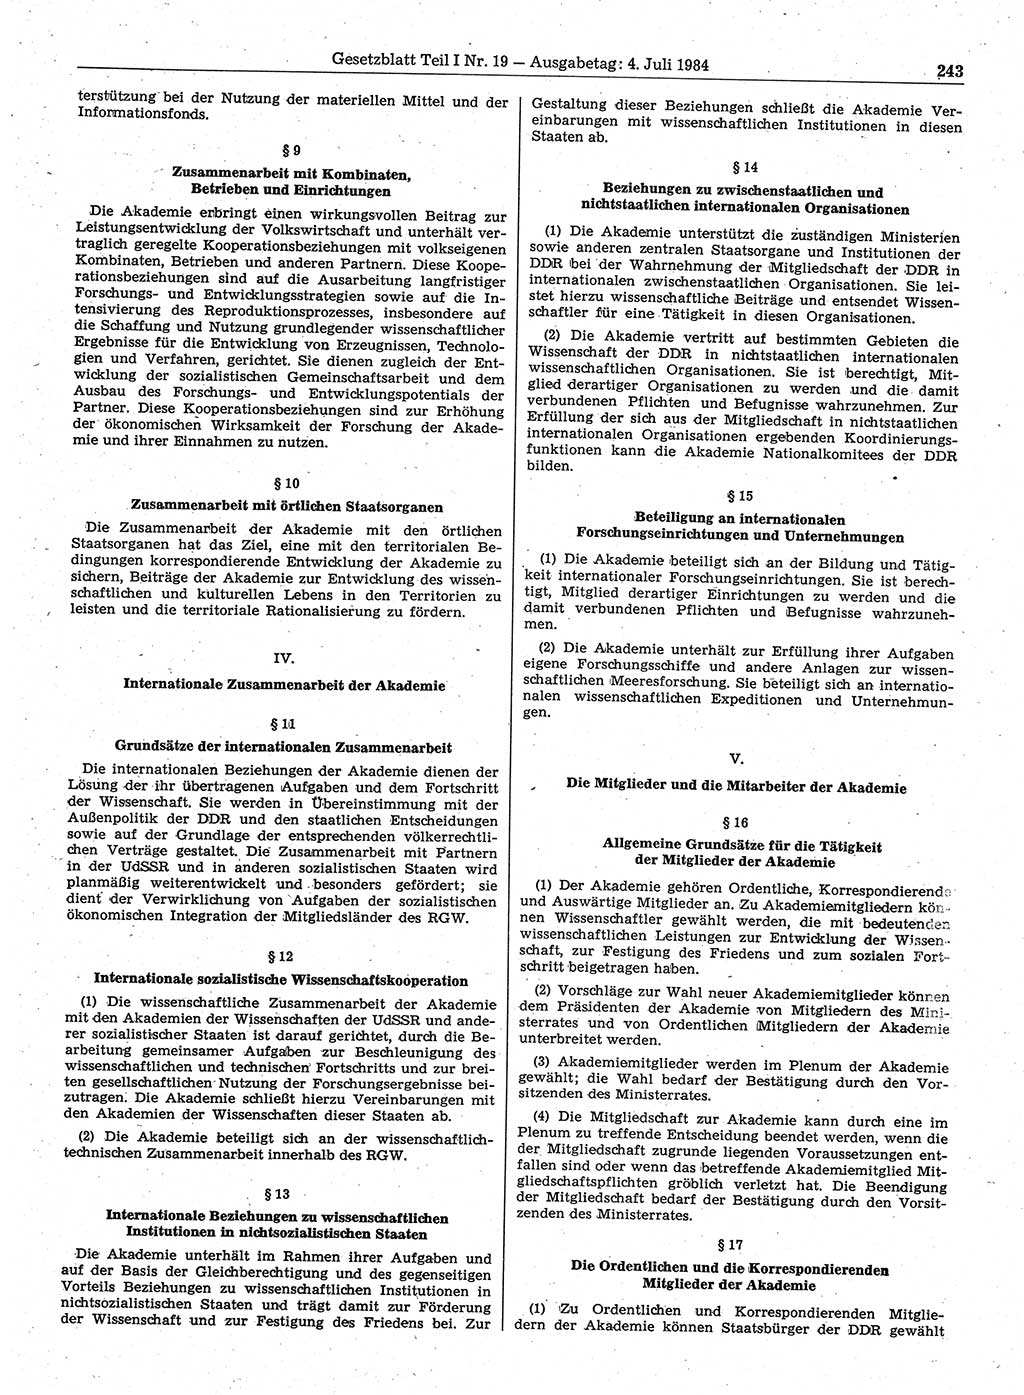 Gesetzblatt (GBl.) der Deutschen Demokratischen Republik (DDR) Teil Ⅰ 1984, Seite 243 (GBl. DDR Ⅰ 1984, S. 243)